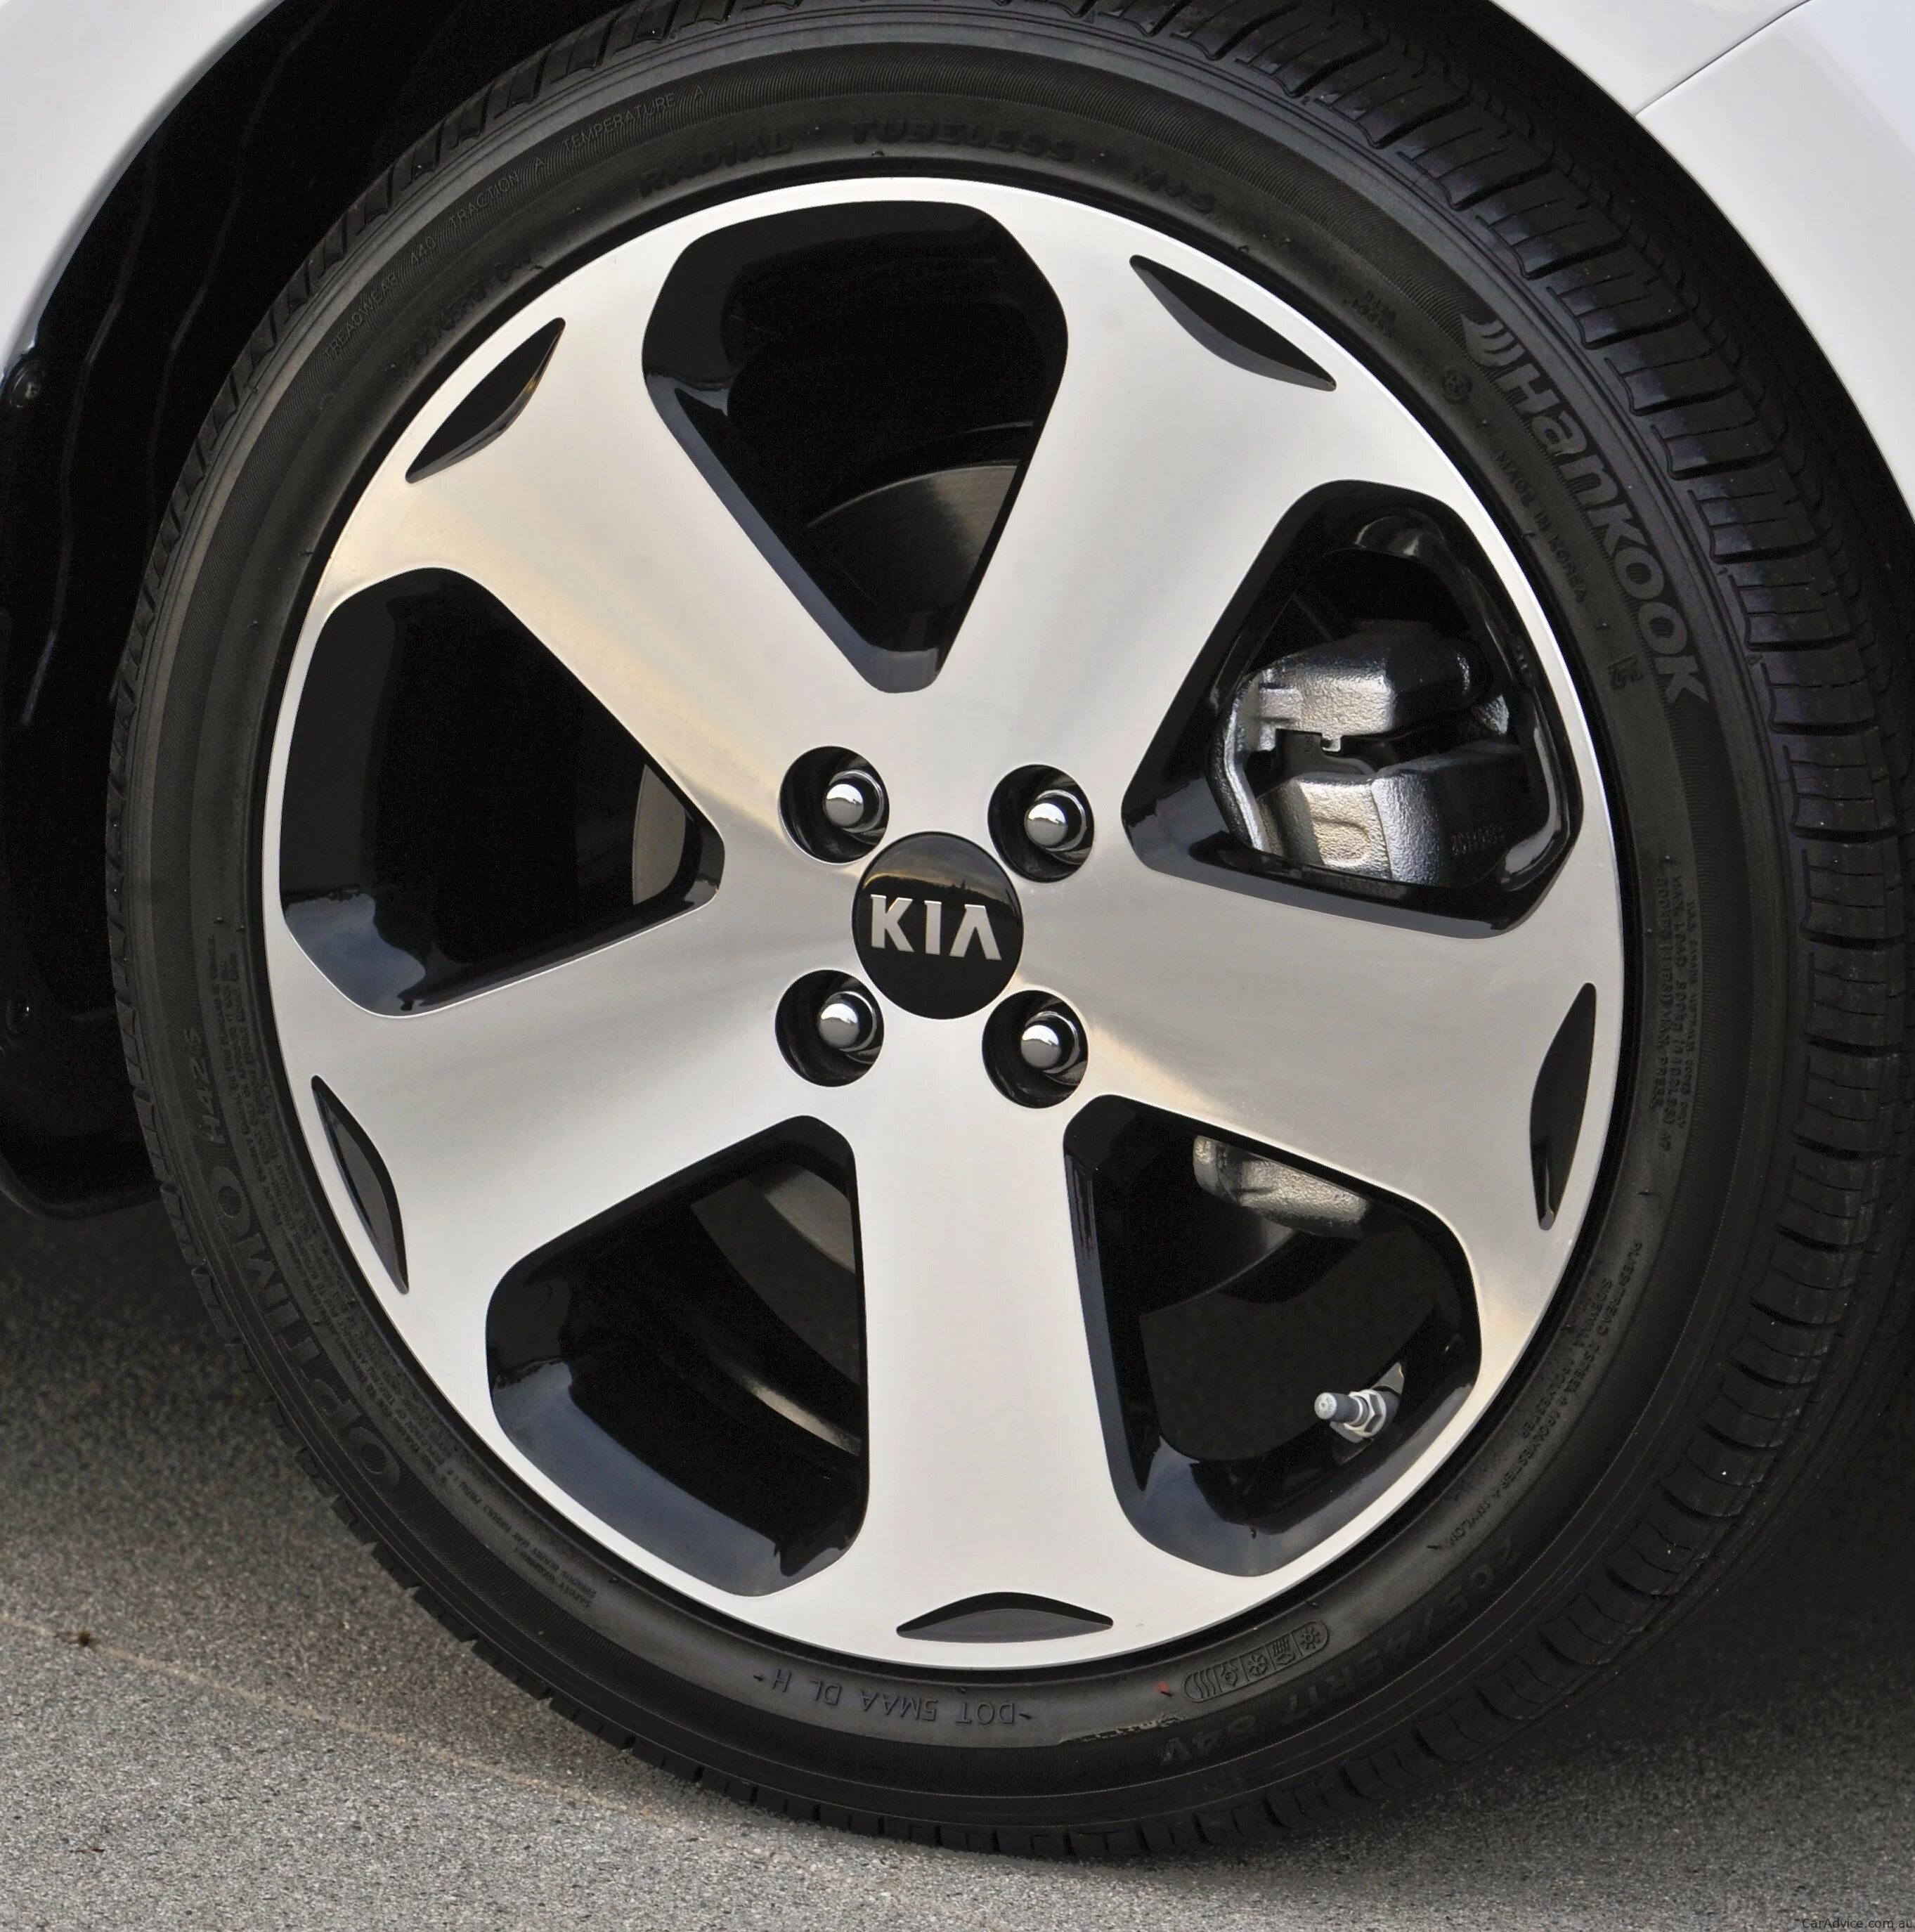 Диски на Киа 15 радиус. 16” Легкосплавные диски Kia Rio. Киа Рио 3 колеса. Kia Rio на литье.